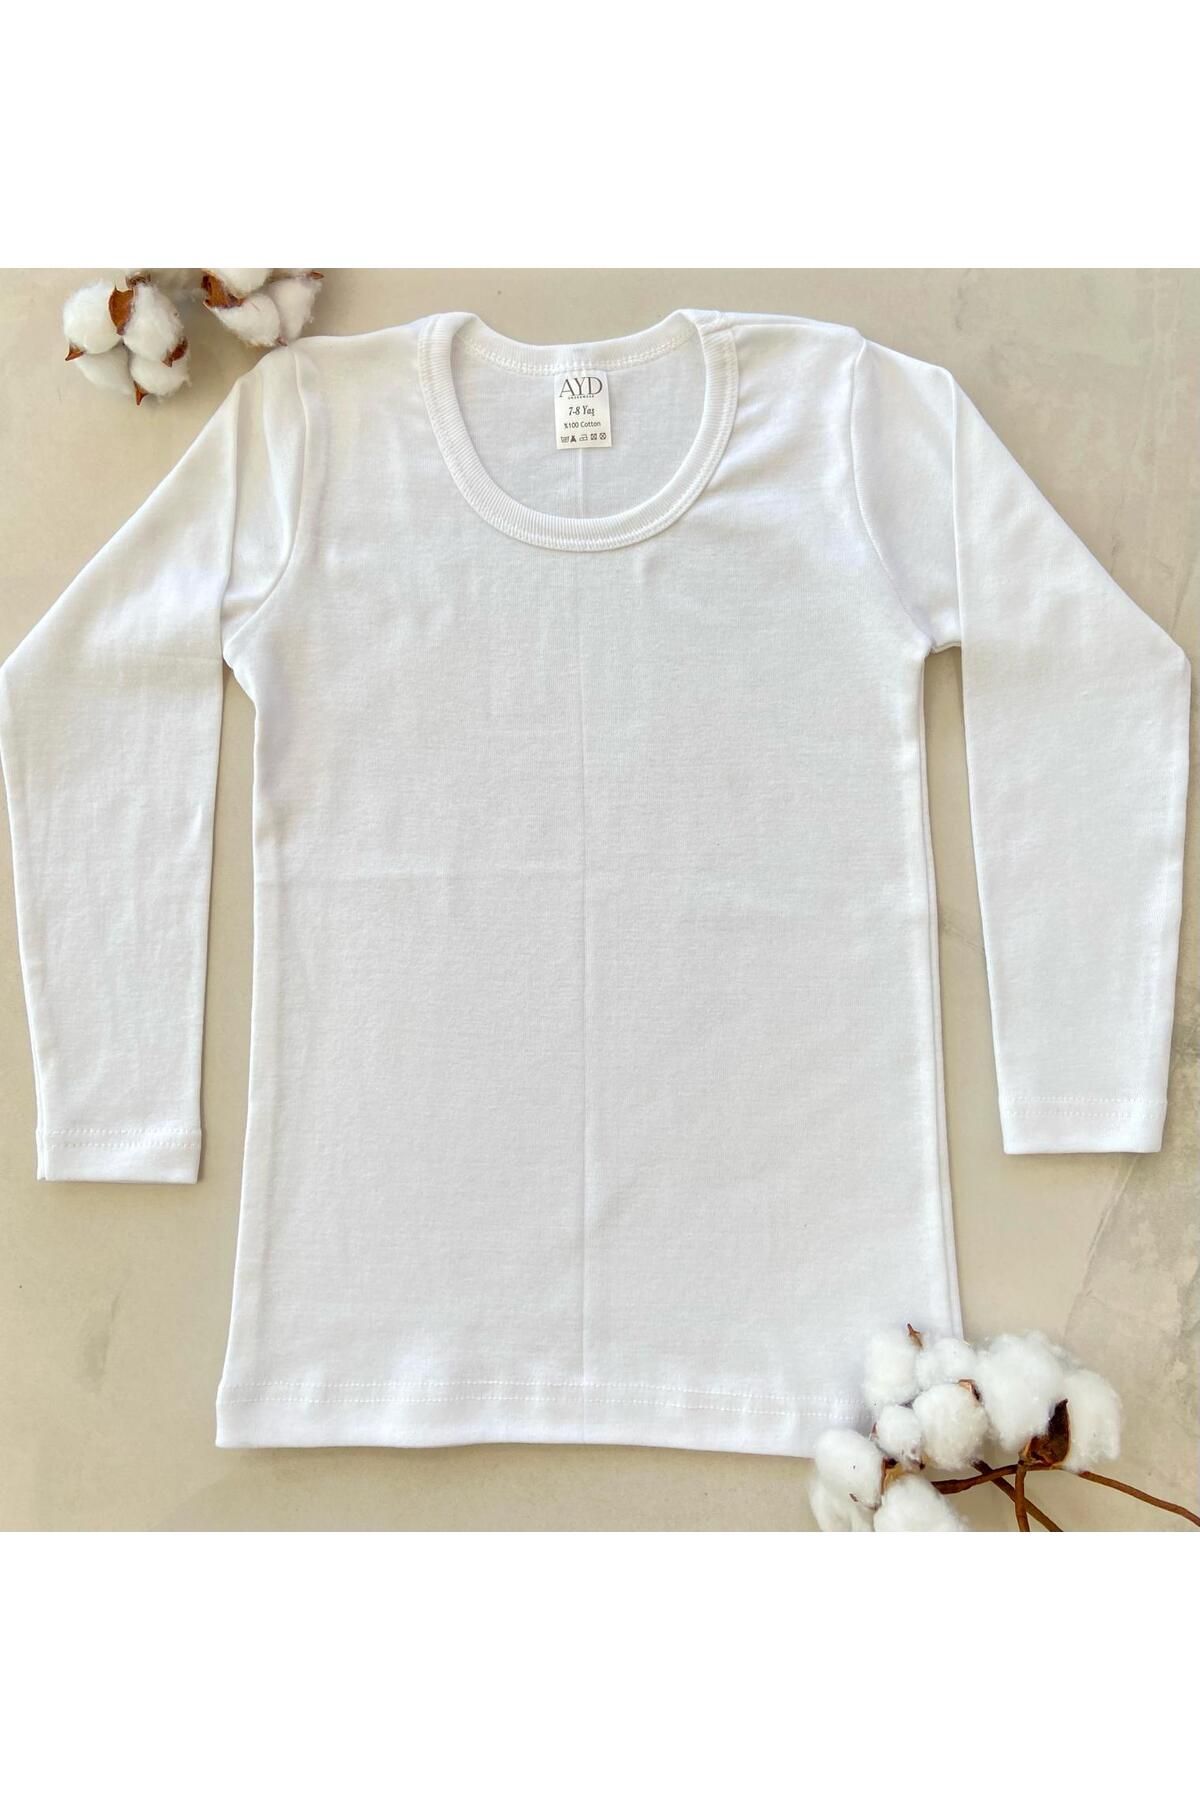 AYD UNDERWEAR Erkek / Kız %100 Pamuk Beyaz Uzun Kollu Basic T-shirt